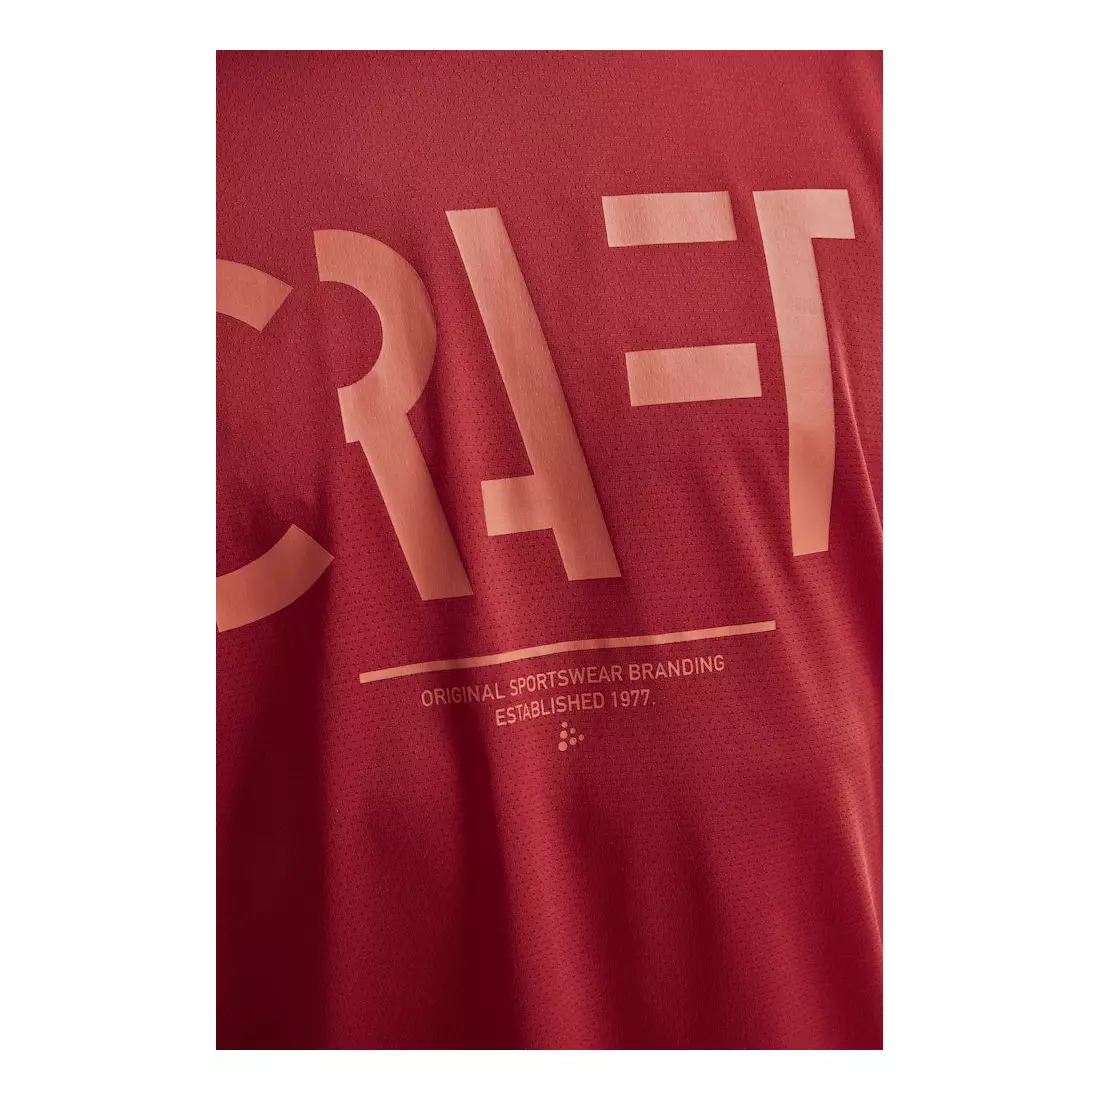 CRAFT EAZE MESH pánske športové / bežecké tričko červené 1907018-432000